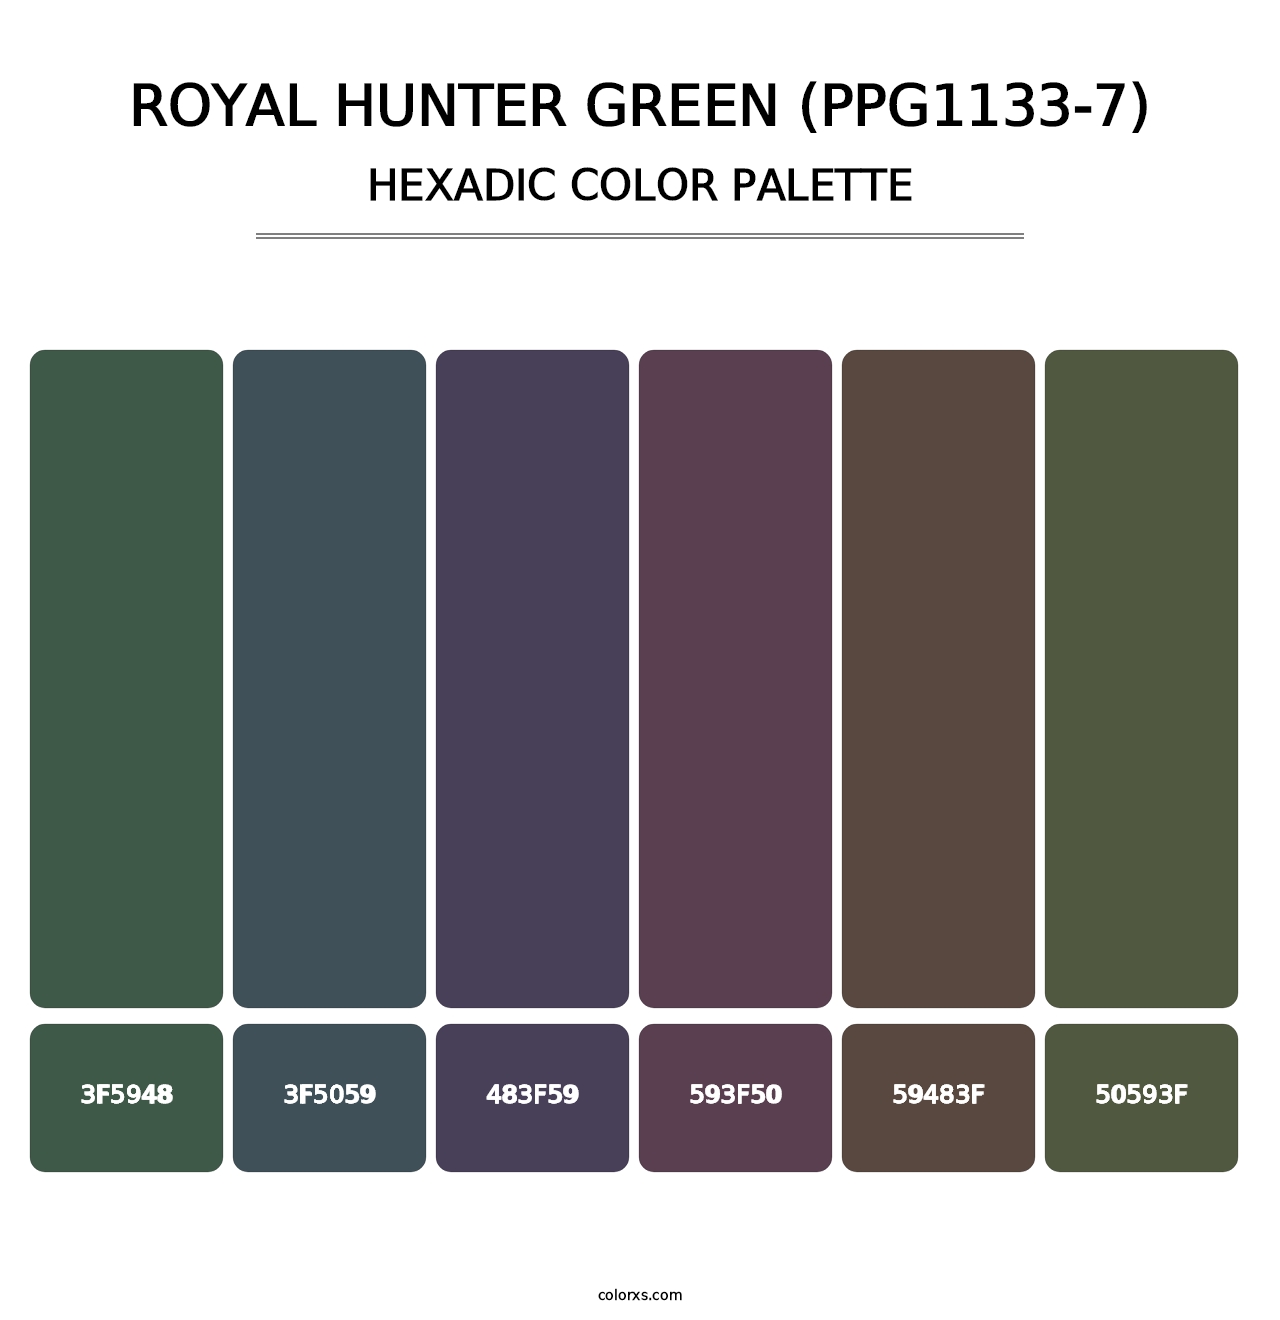 Royal Hunter Green (PPG1133-7) - Hexadic Color Palette